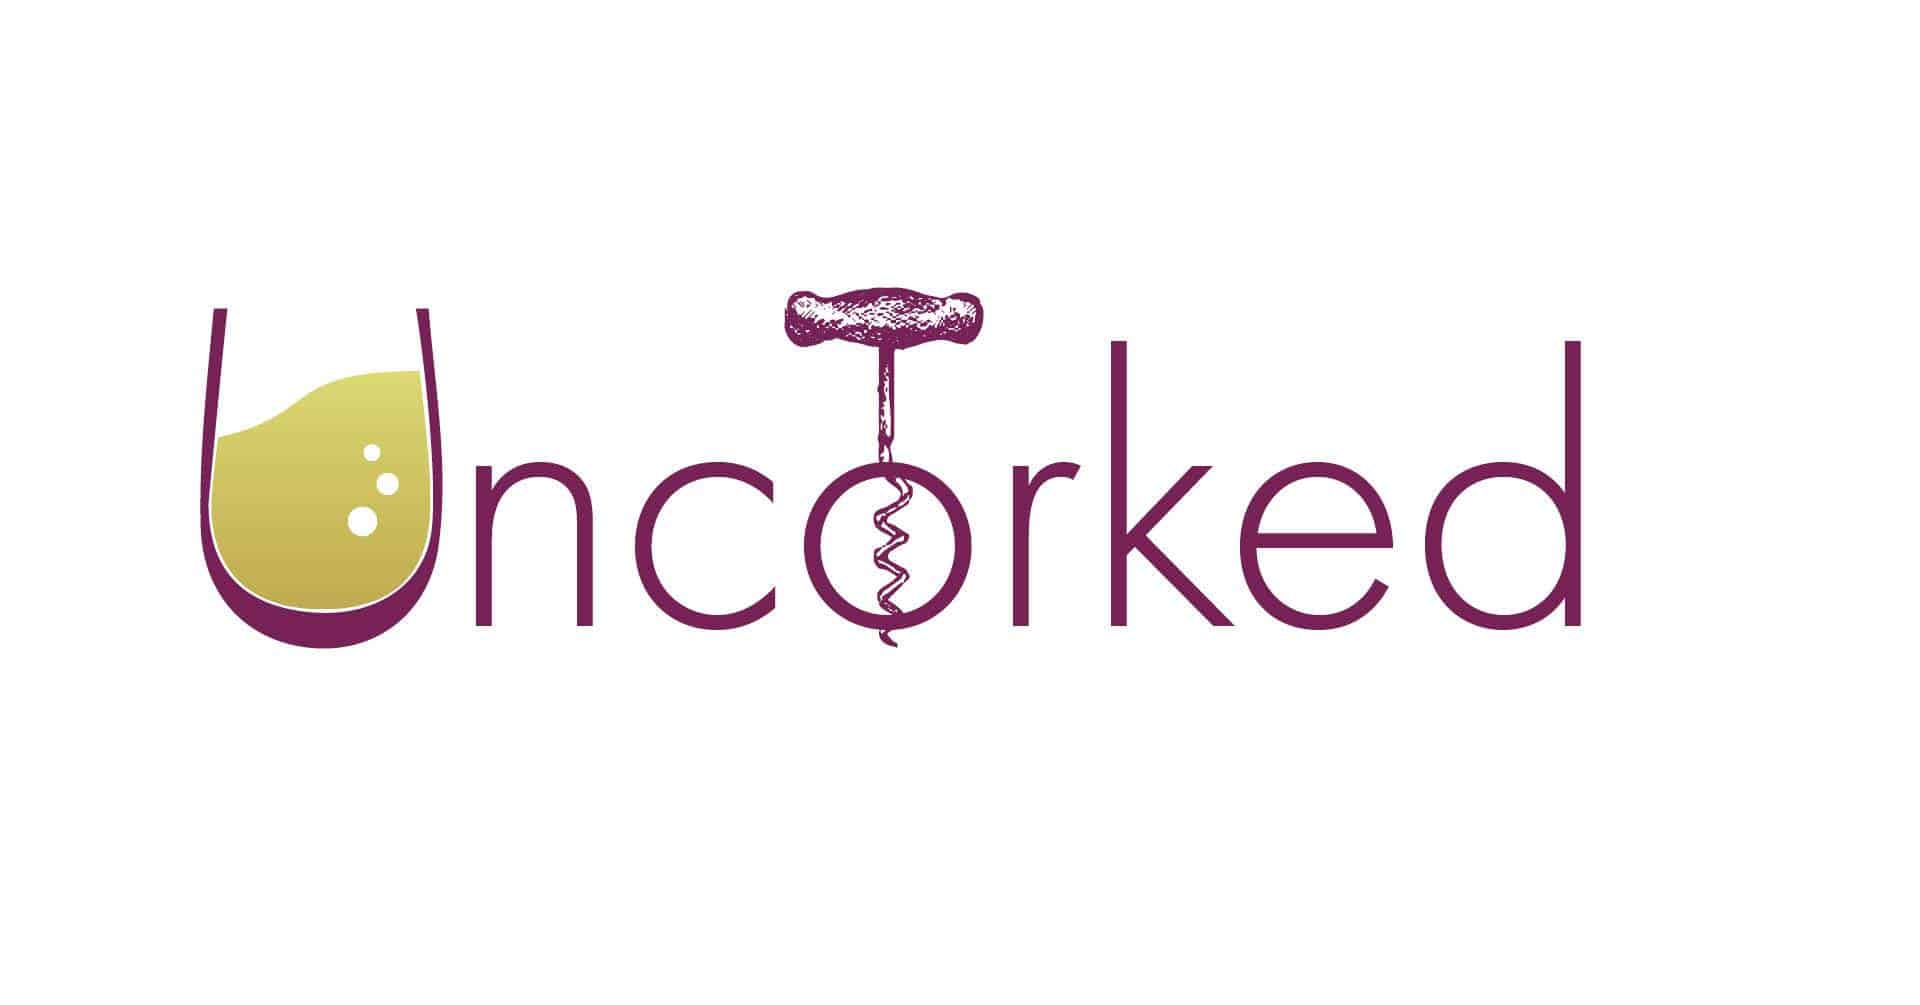 Uncorked, U is a wine glass, O has a cork screw in it.